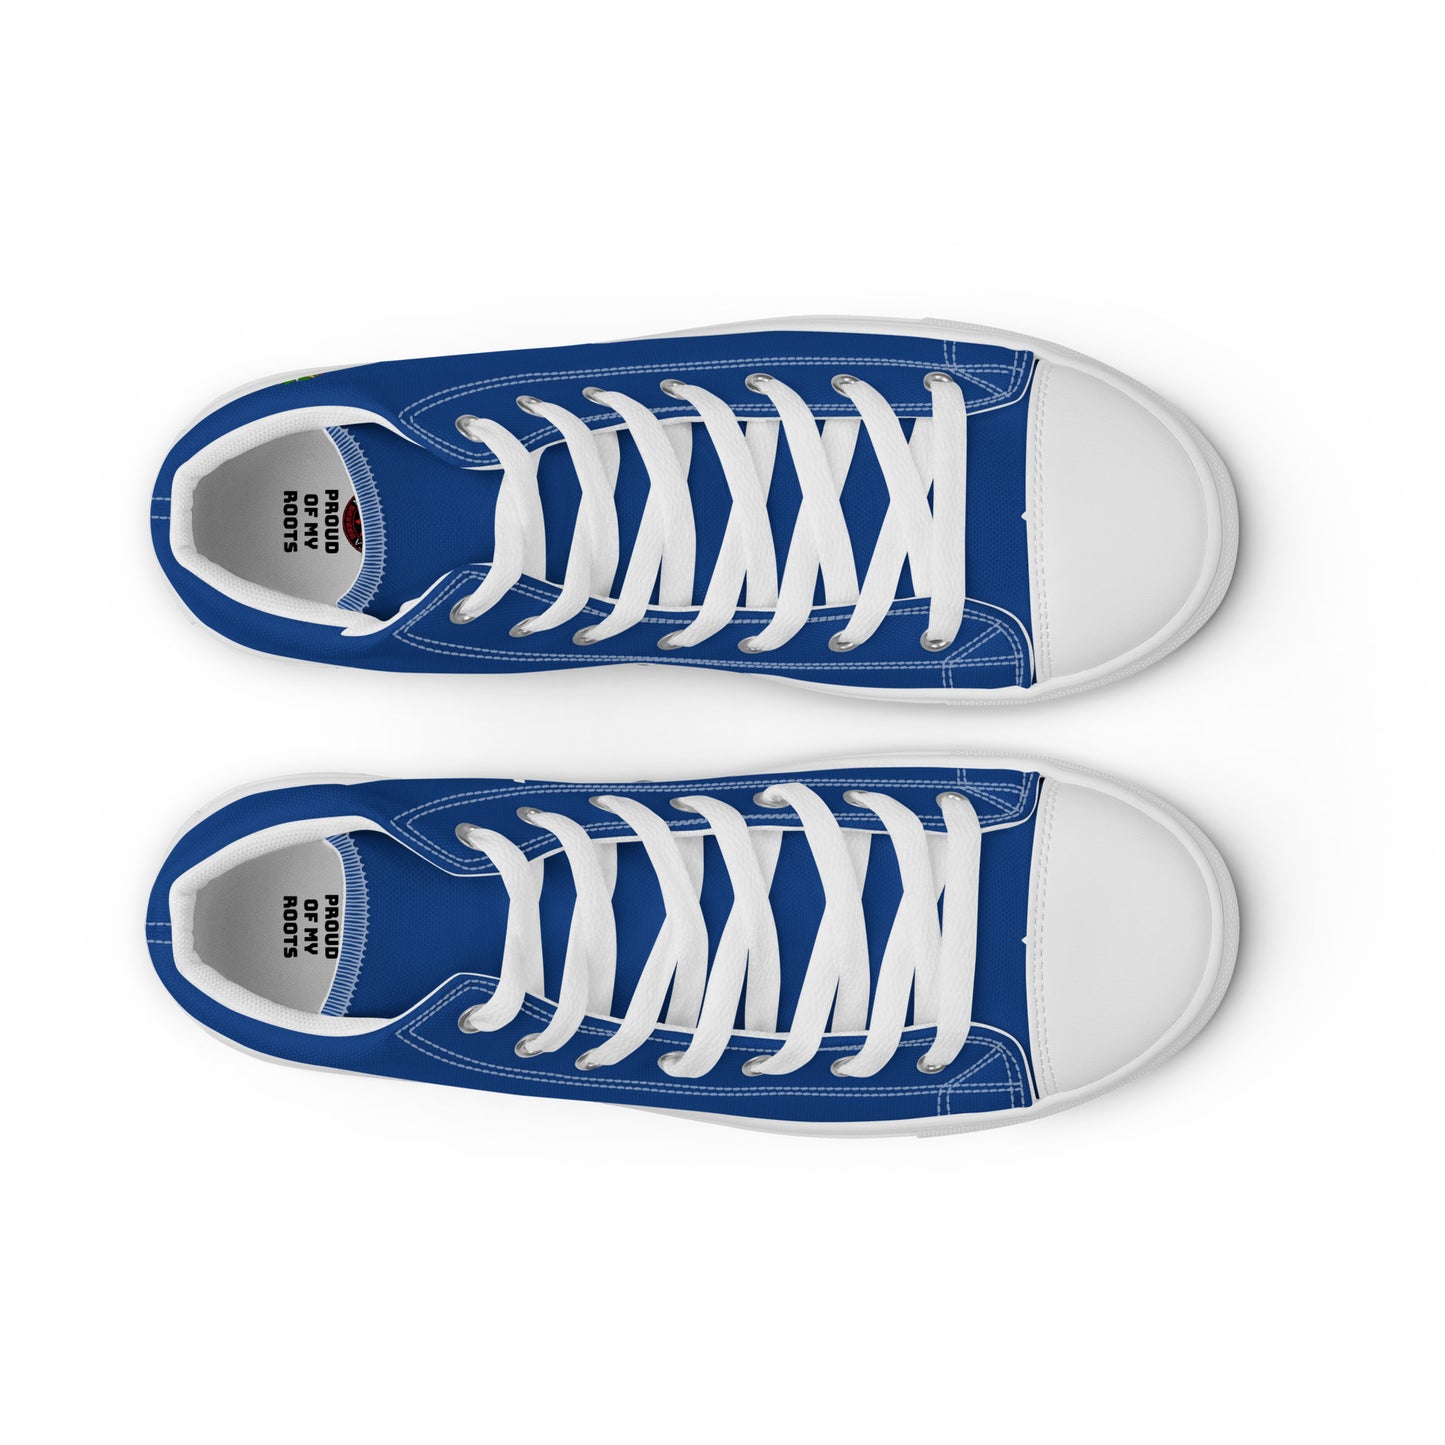 Honduras - Women - Blue - High top shoes